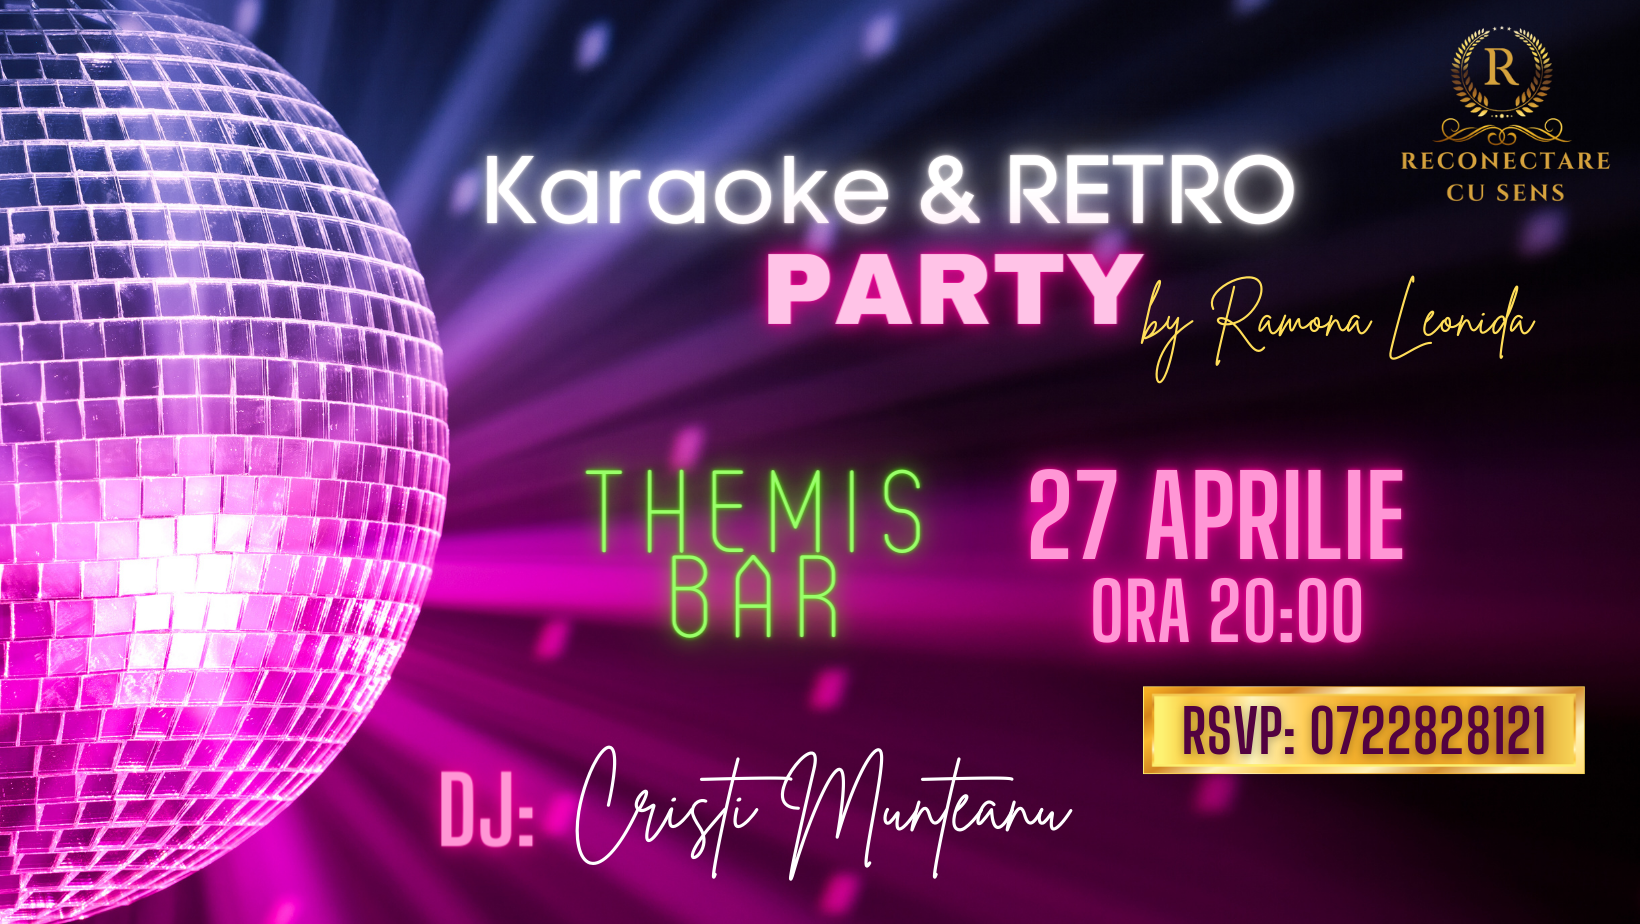 RETRO & KARAOKE PARTY pe 27 aprilie la Themis Bar in Constanta